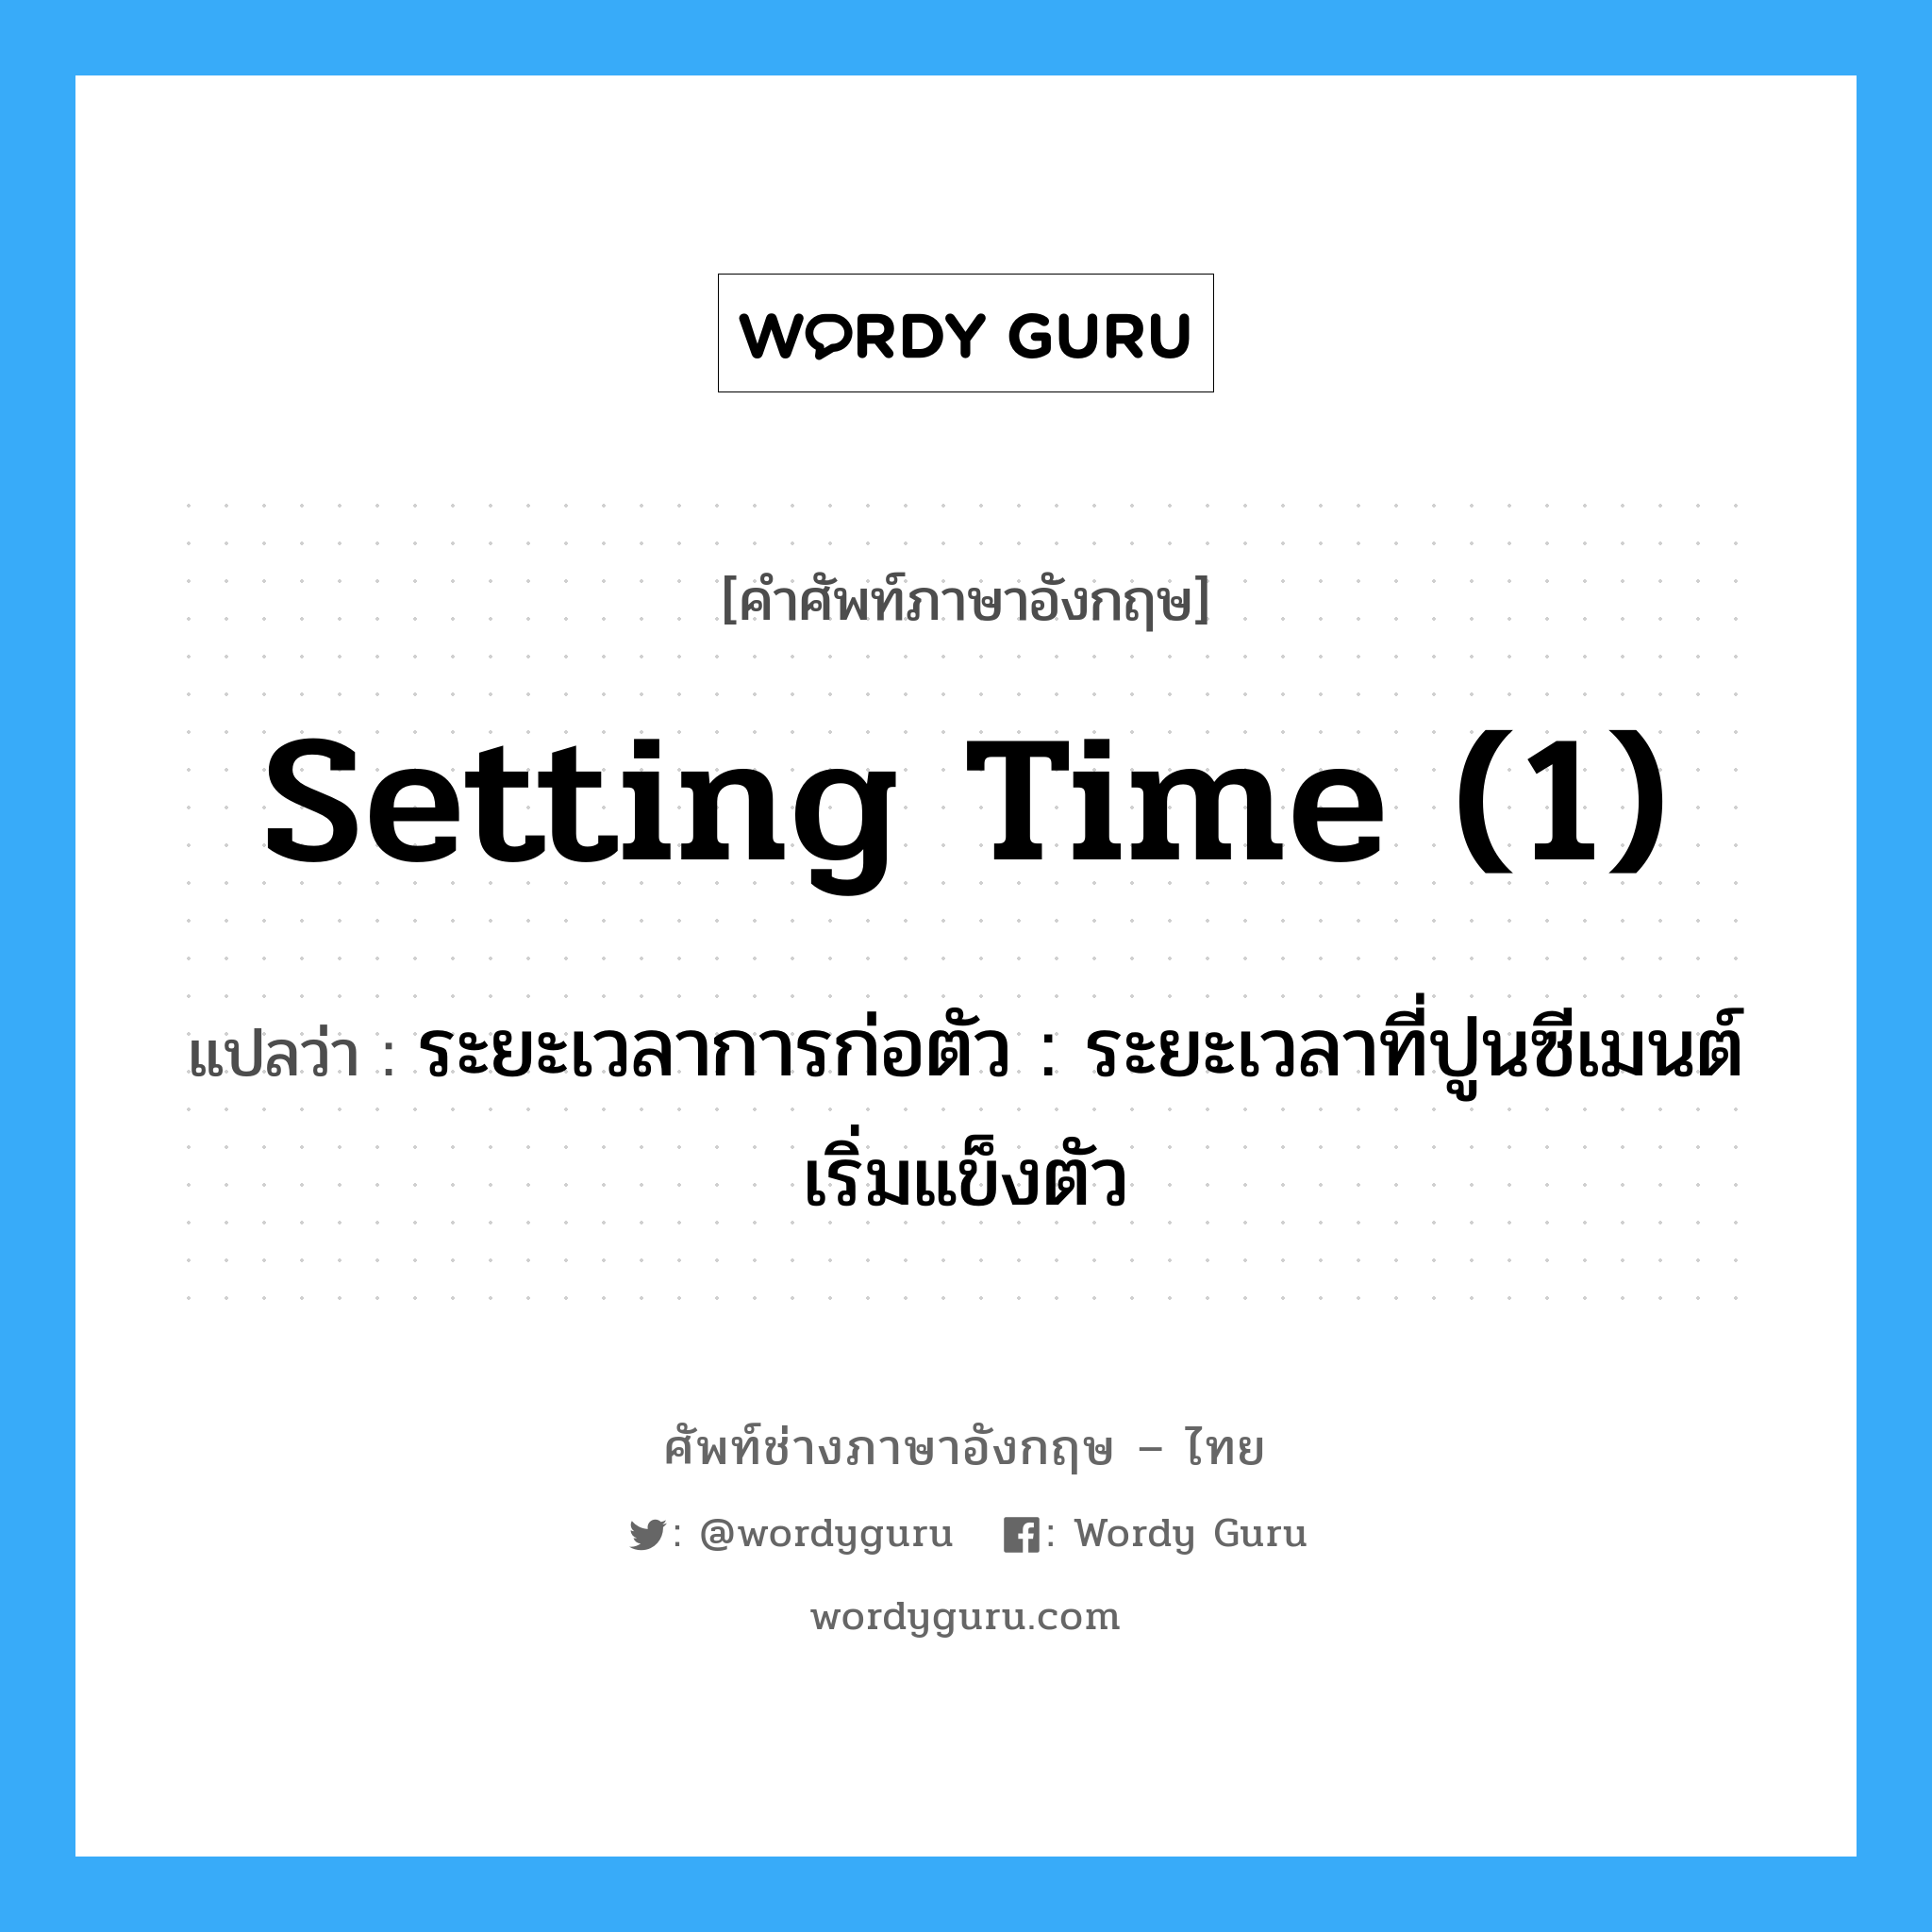 setting time (1) แปลว่า?, คำศัพท์ช่างภาษาอังกฤษ - ไทย setting time (1) คำศัพท์ภาษาอังกฤษ setting time (1) แปลว่า ระยะเวลาการก่อตัว : ระยะเวลาที่ปูนซีเมนต์เริ่มแข็งตัว